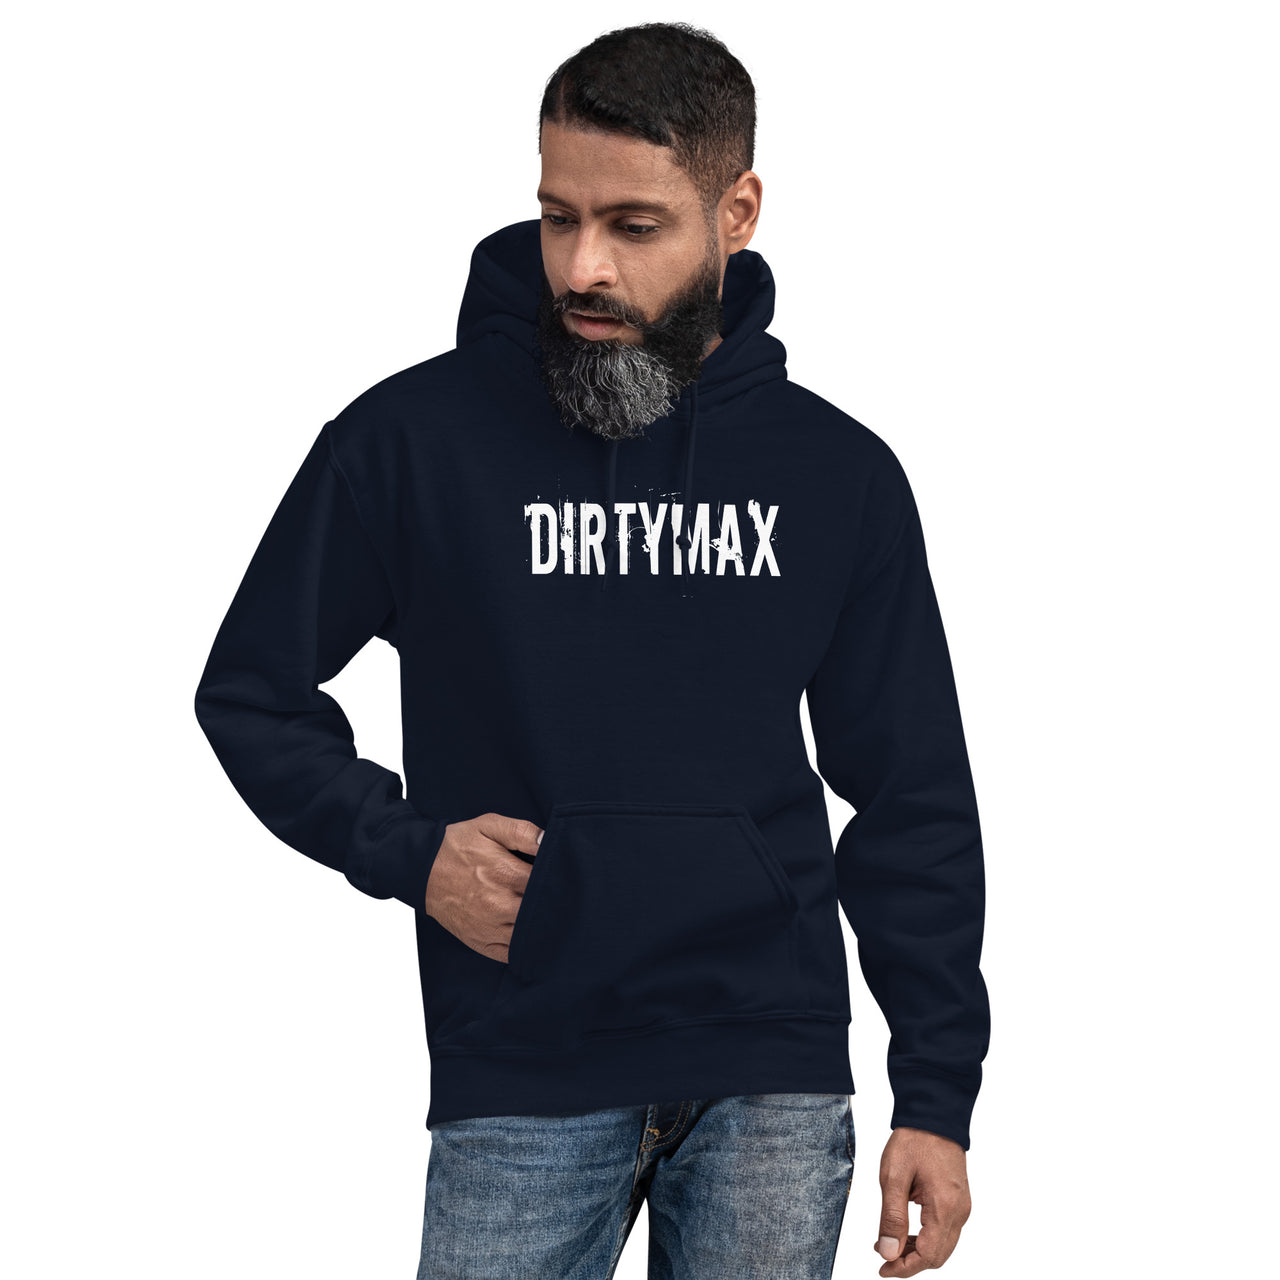 Dirtymax Duramax Hoodie, Diesel Truck Sweatshirt